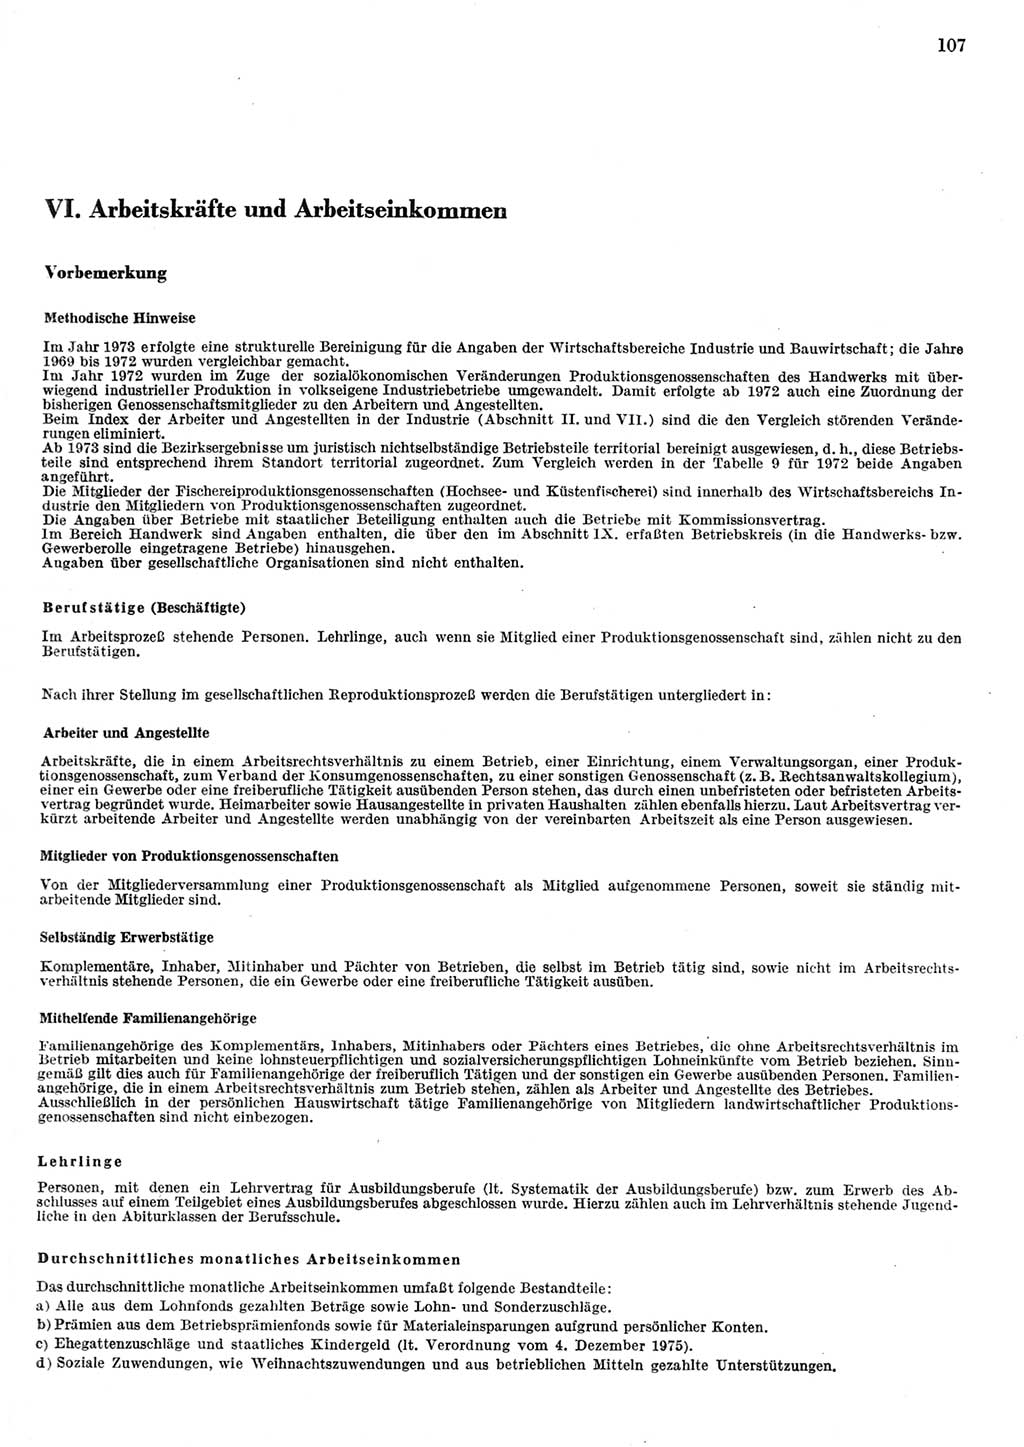 Statistisches Jahrbuch der Deutschen Demokratischen Republik (DDR) 1984, Seite 107 (Stat. Jb. DDR 1984, S. 107)